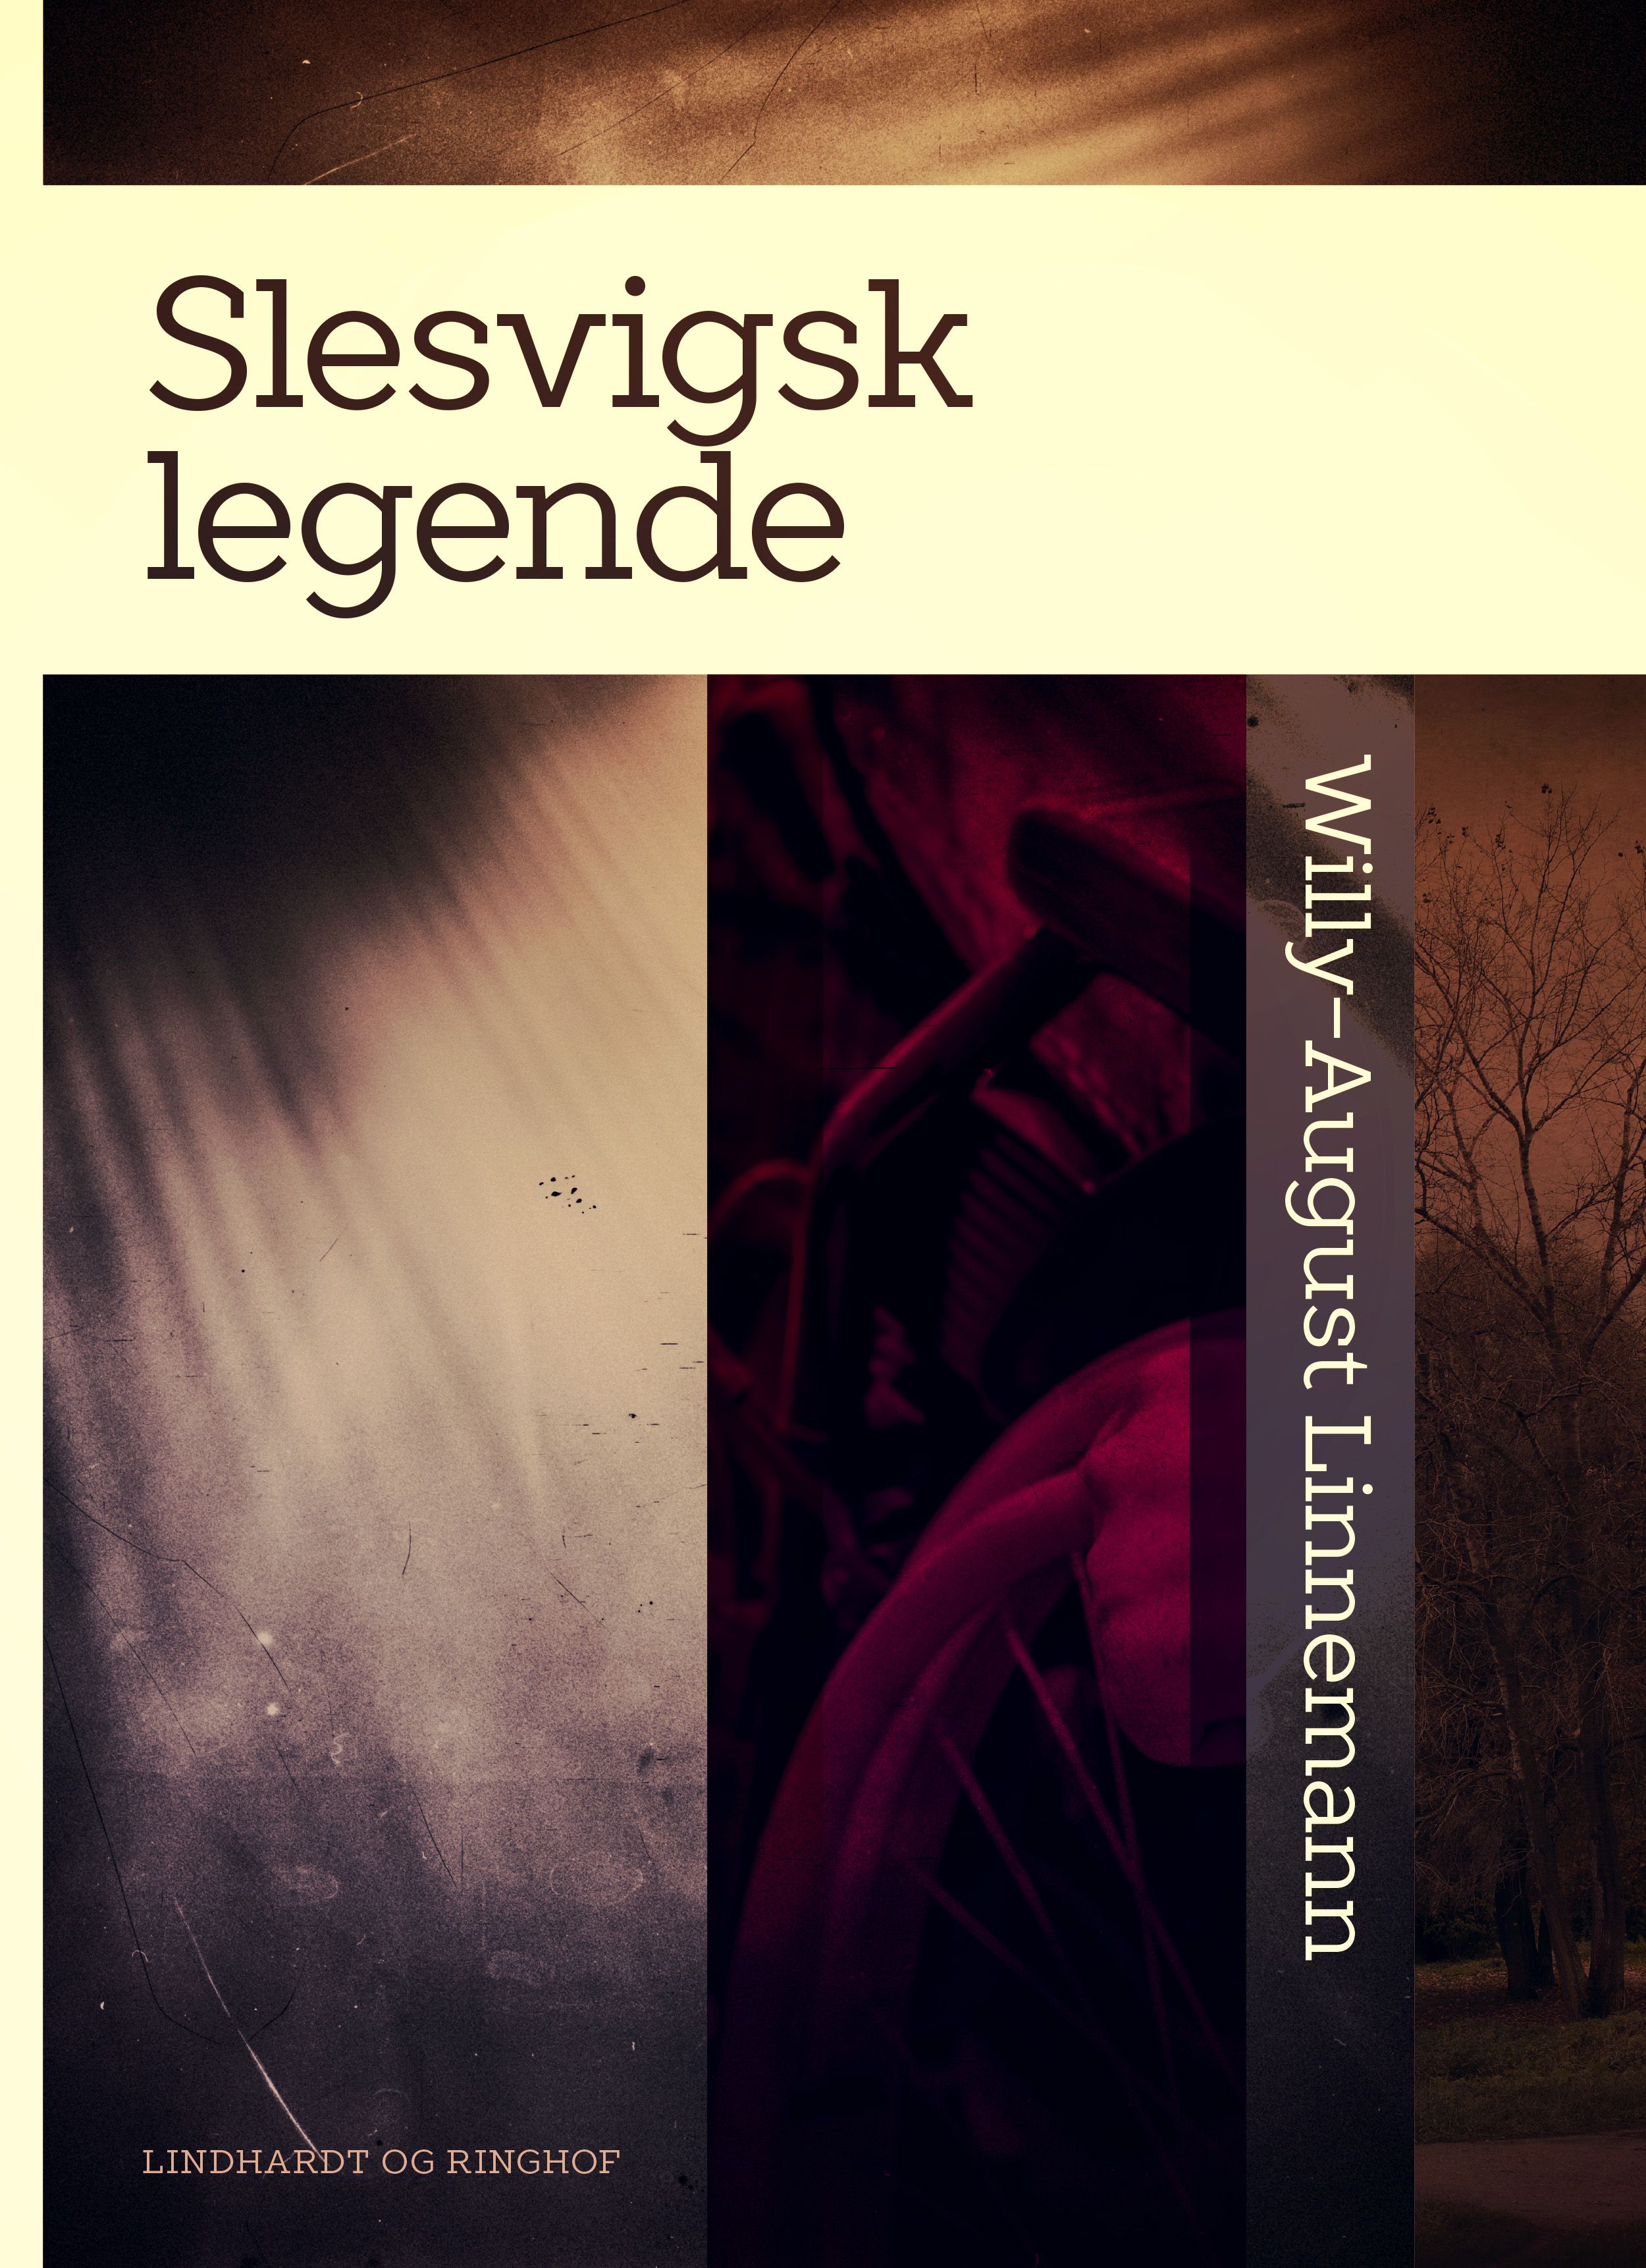 Slesvigsk legende, e-bog af Willy-August Linnemann